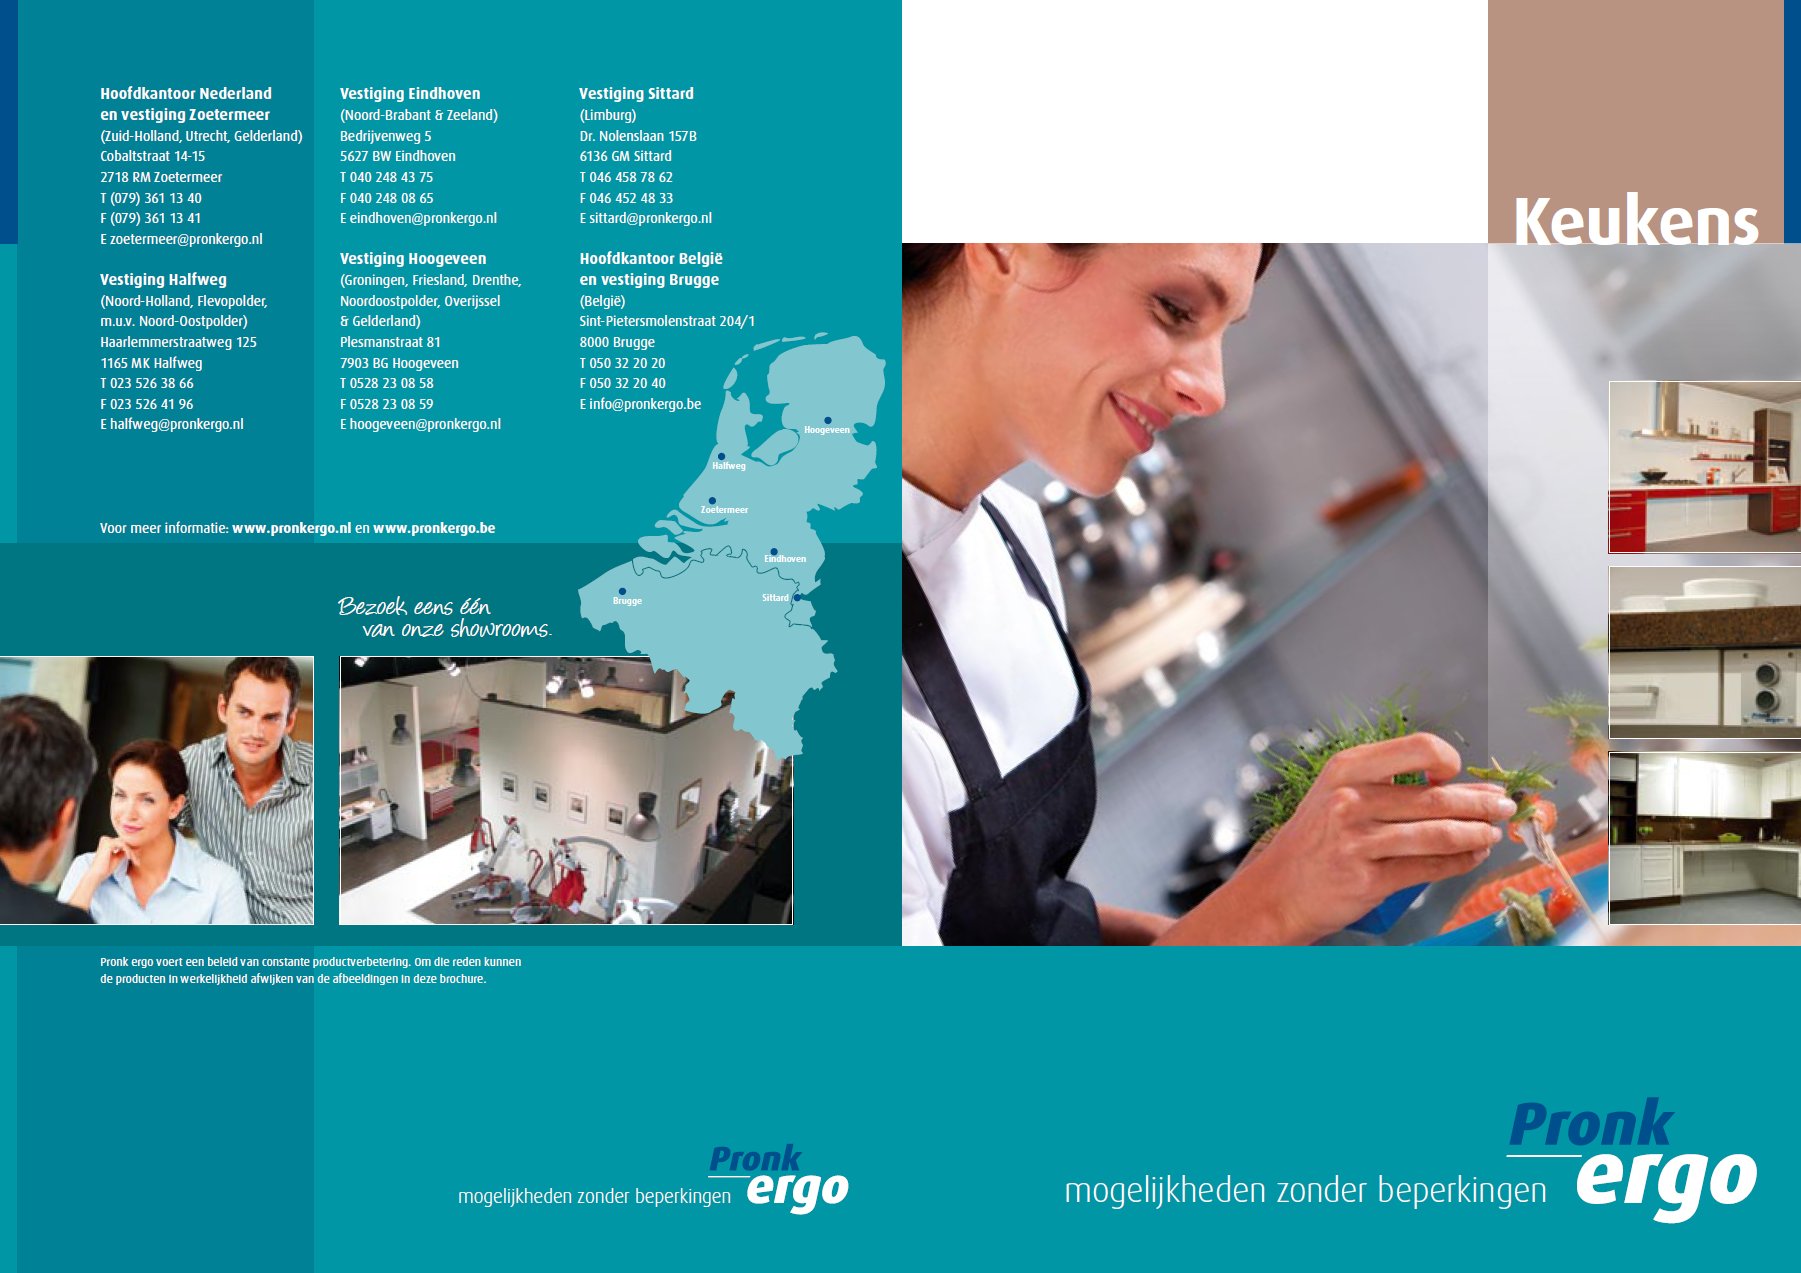 toegevoegd document 4 van Pronk Ergo hoogte verstelbare keukenuitrusting / aangepaste keukeninrichting assortiment 